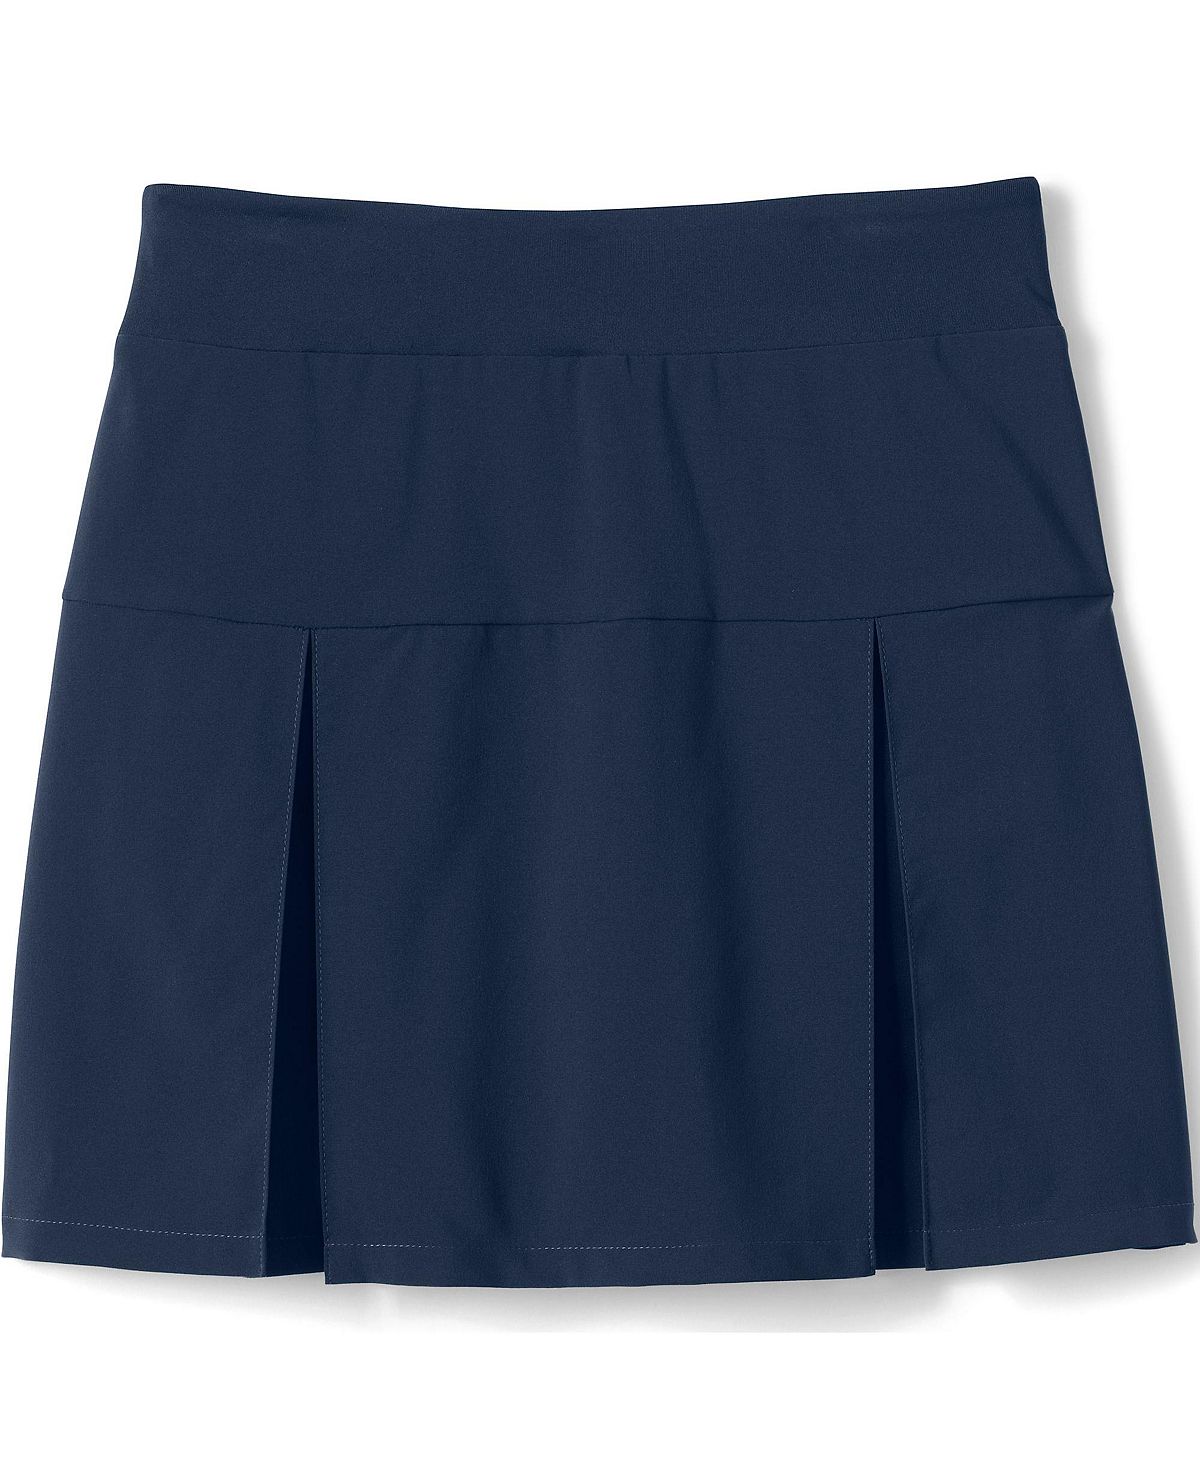 Школьная форма Lands' End, активная юбка-юбка выше колена для девочек Lands' End